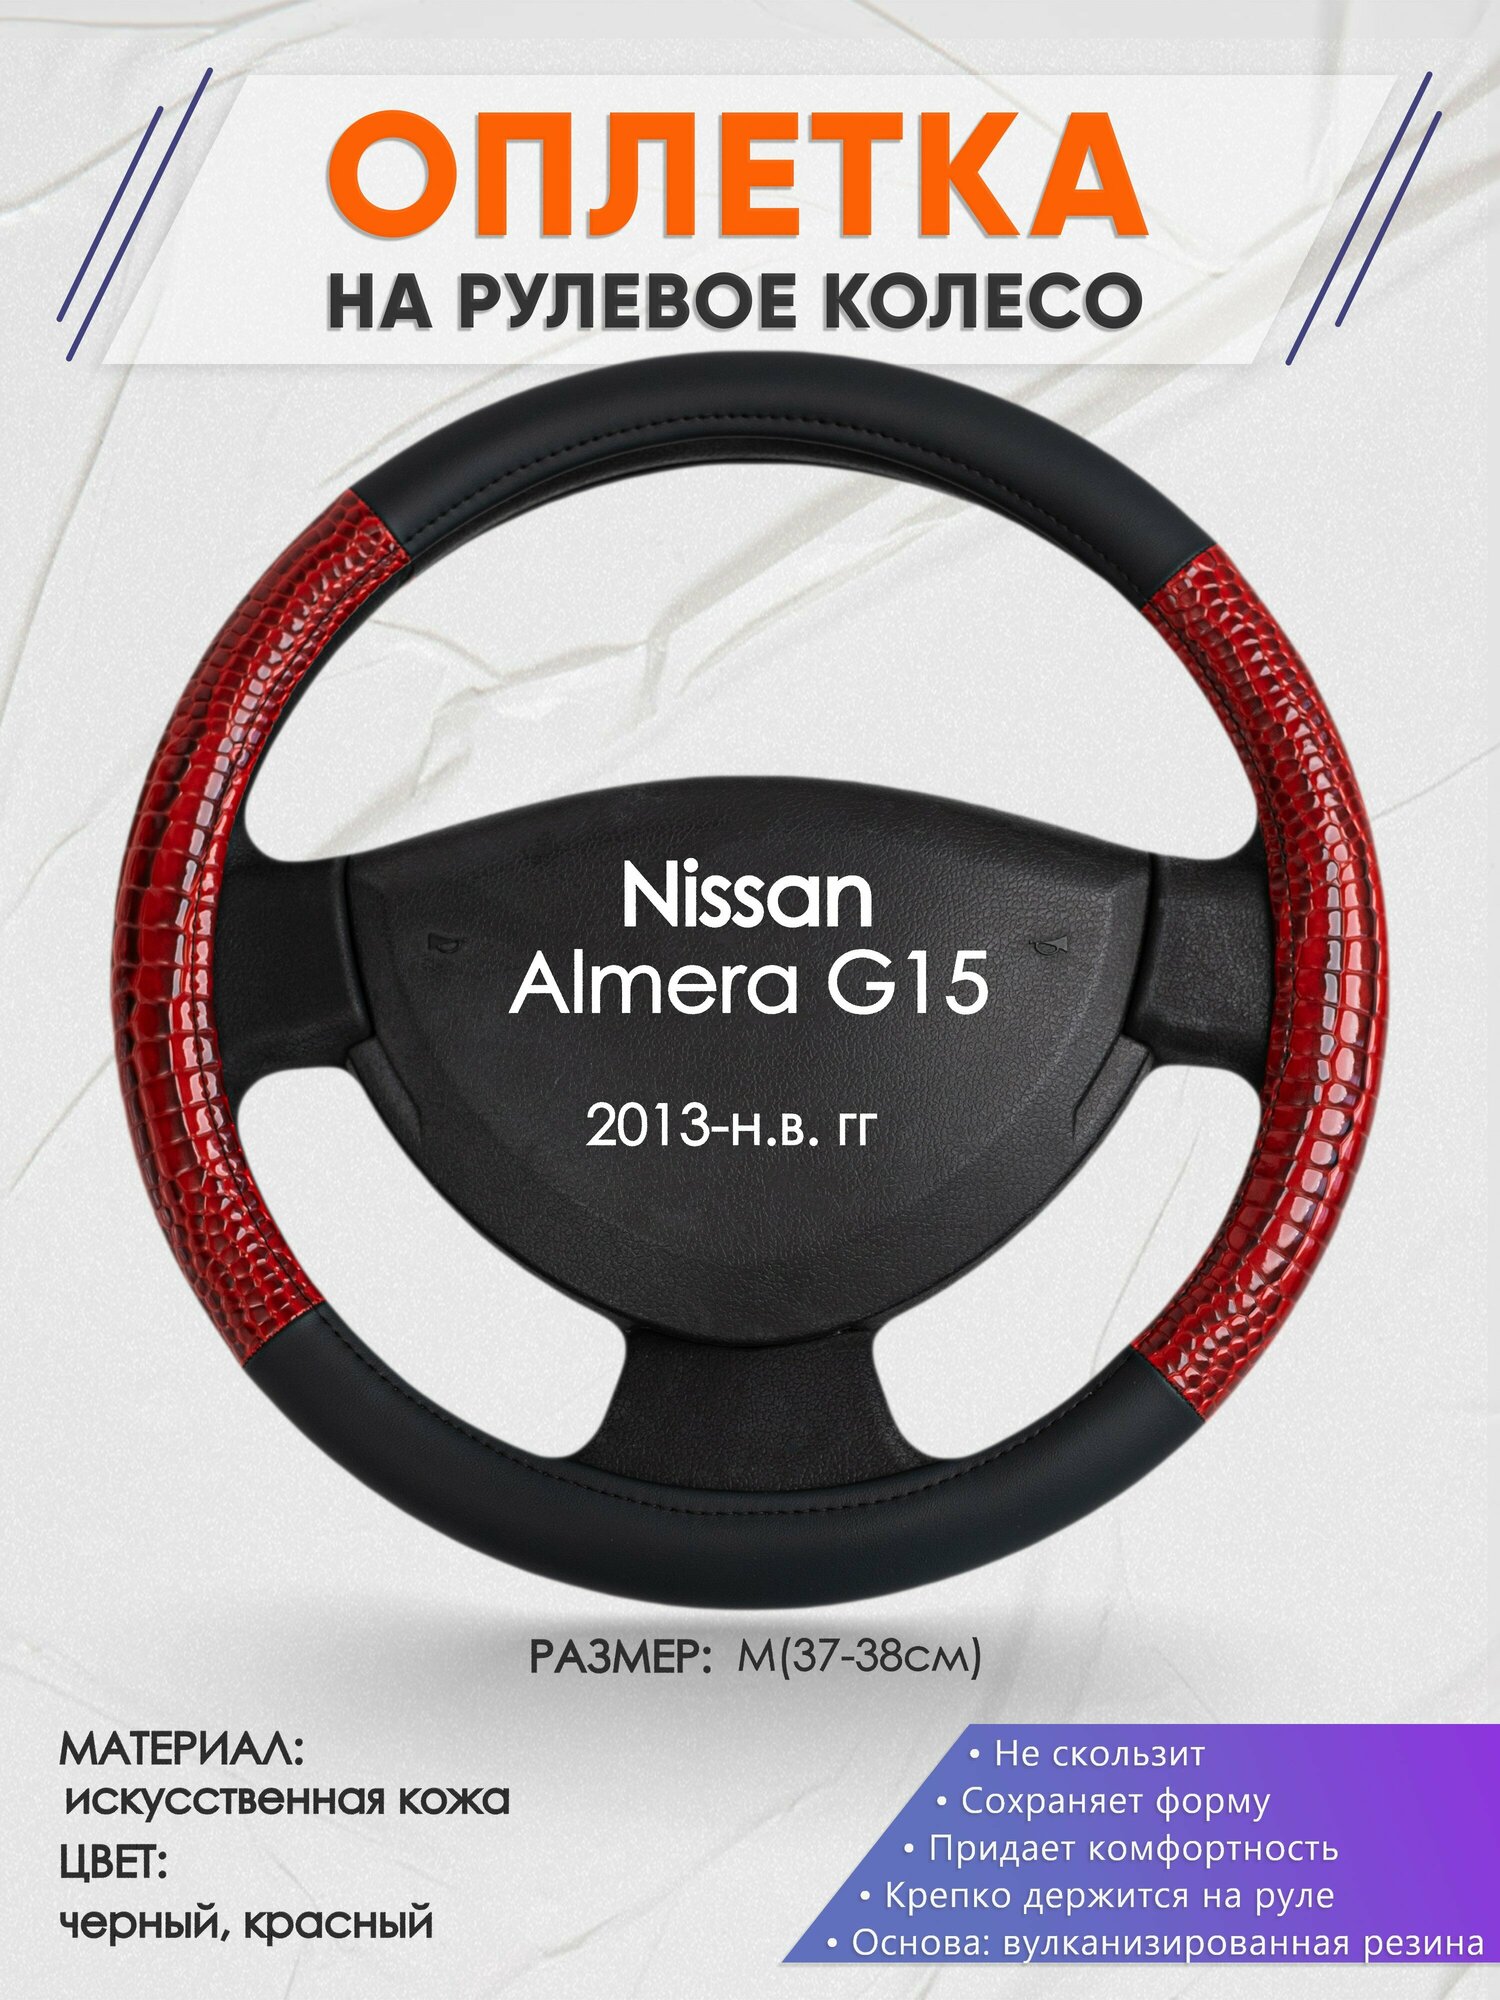 Оплетка на руль для Nissan Almera G15(Ниссан Альмера) 2013-н. в, M(37-38см), Искусственная кожа 16